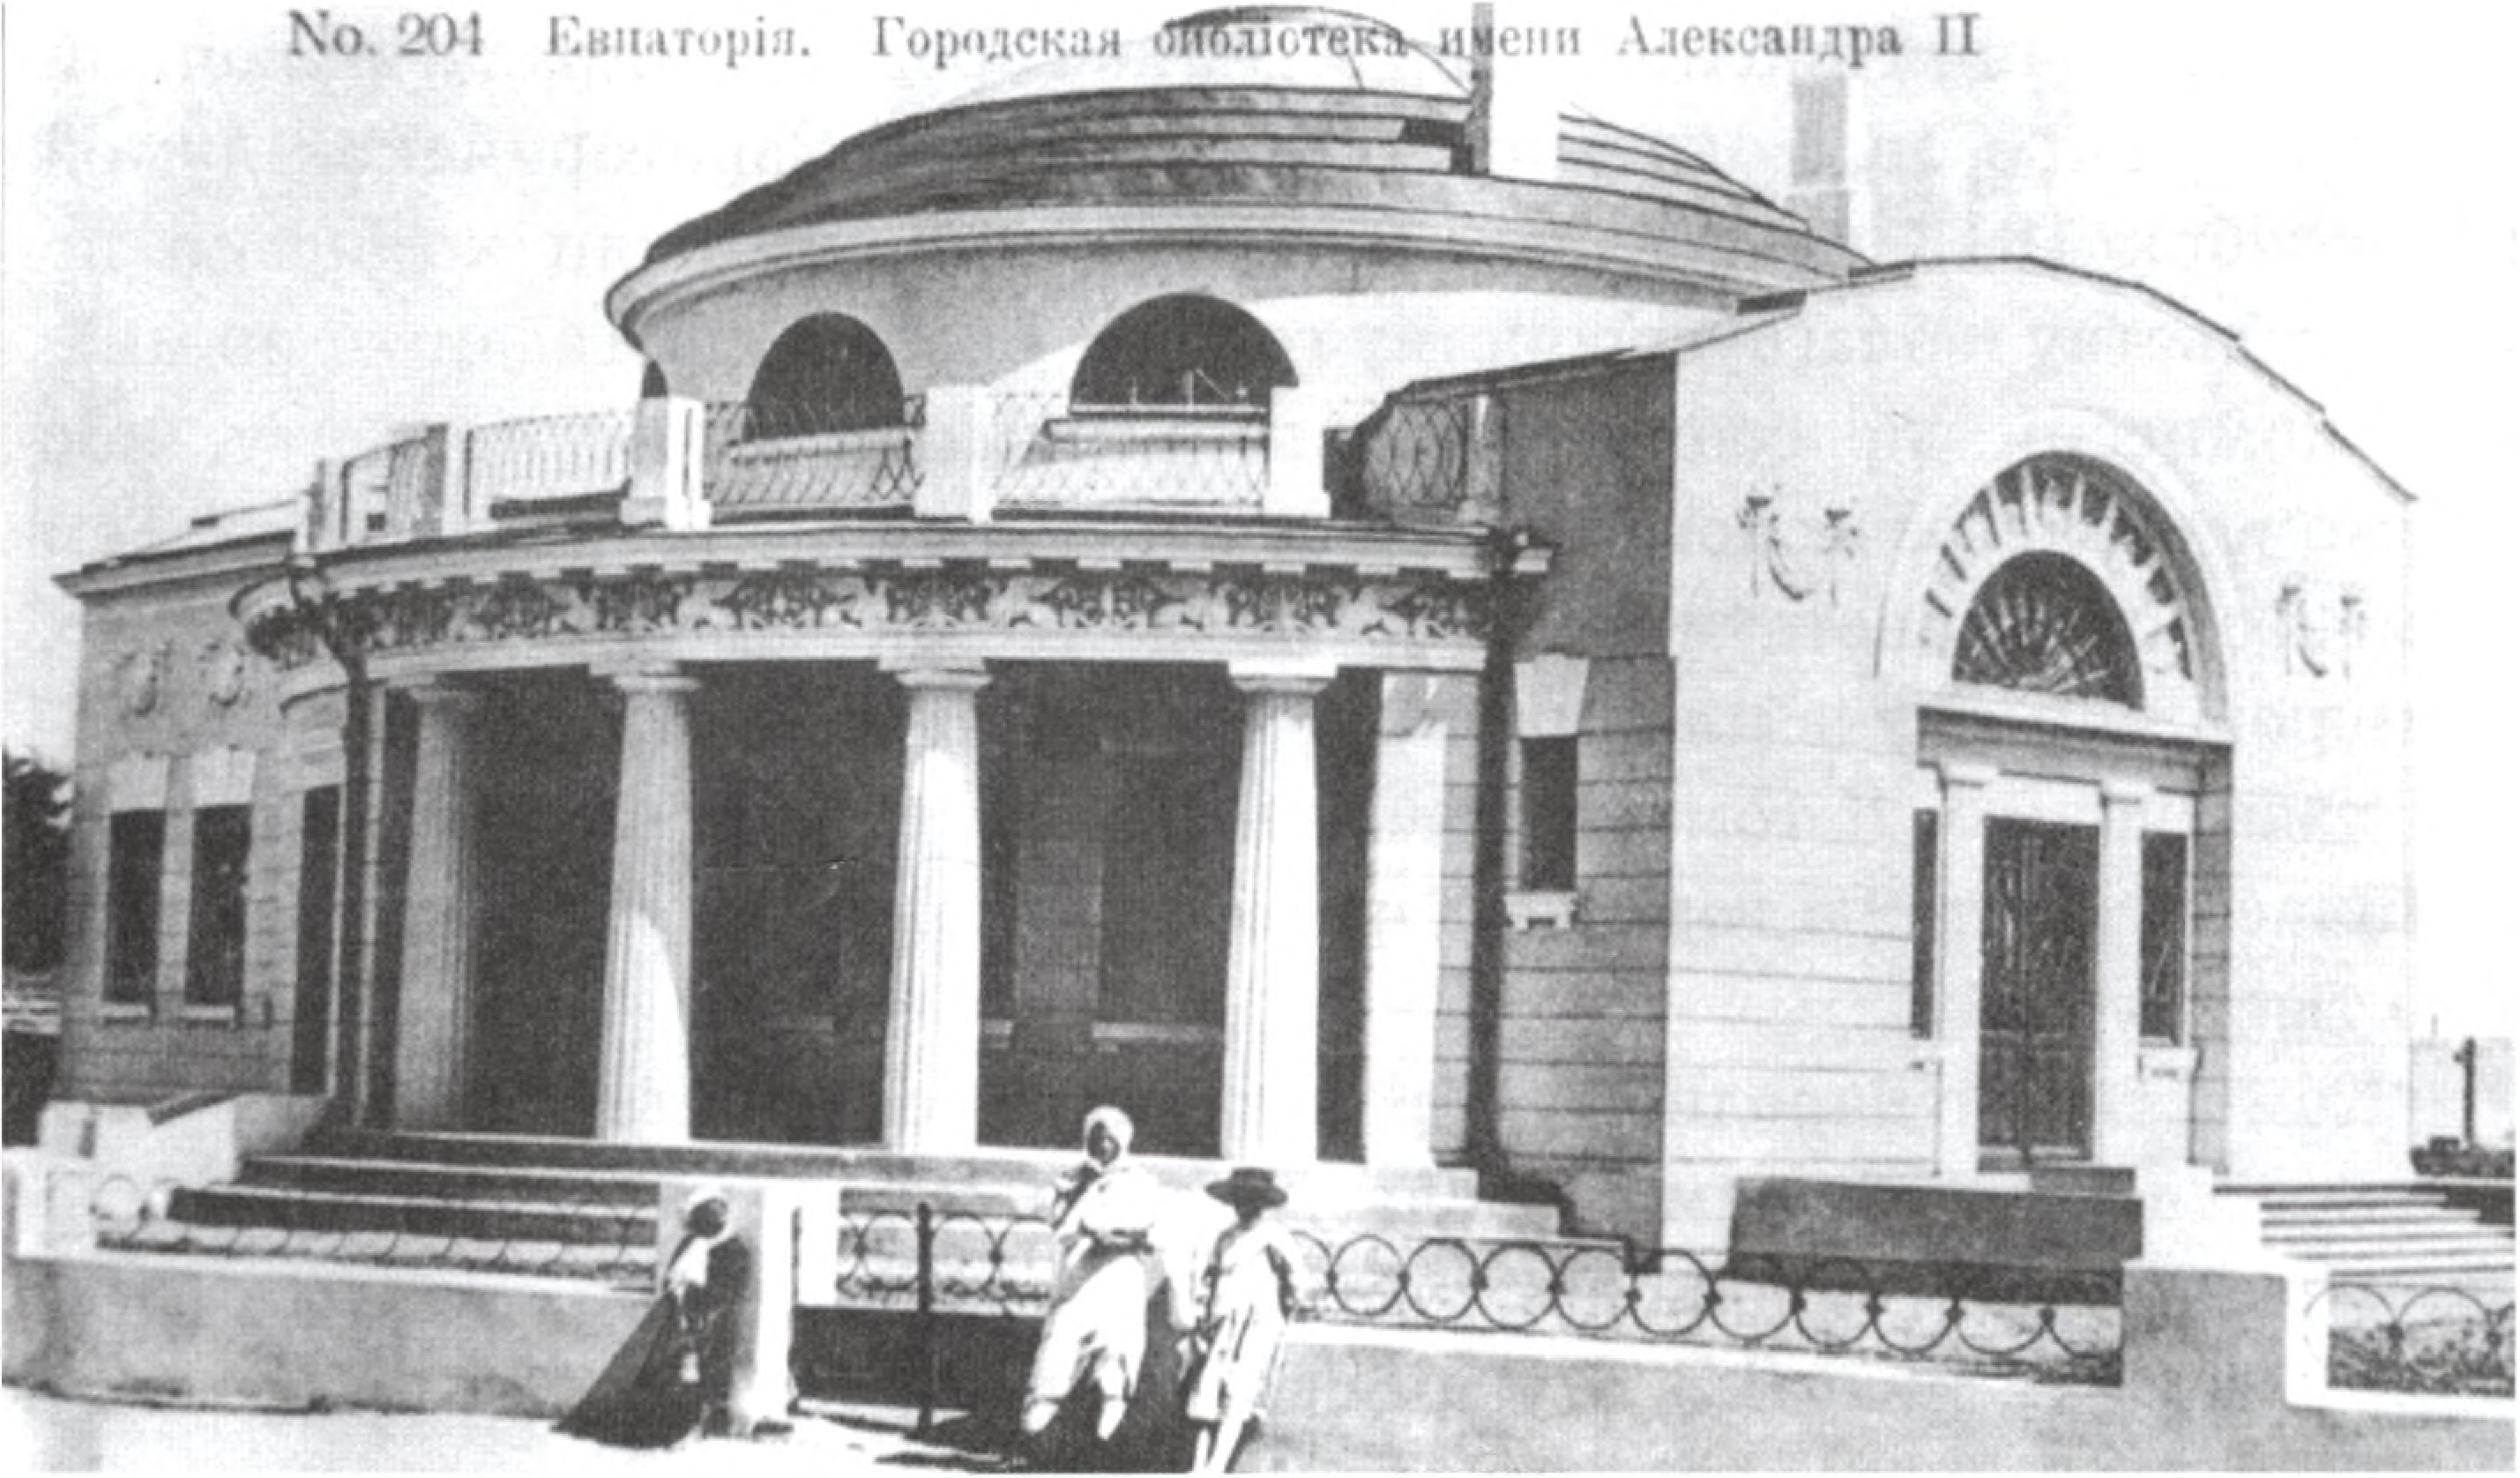 Библиотека им. Александра II. Архитектор П.Я. Сеферов. 1911—1913 гг.